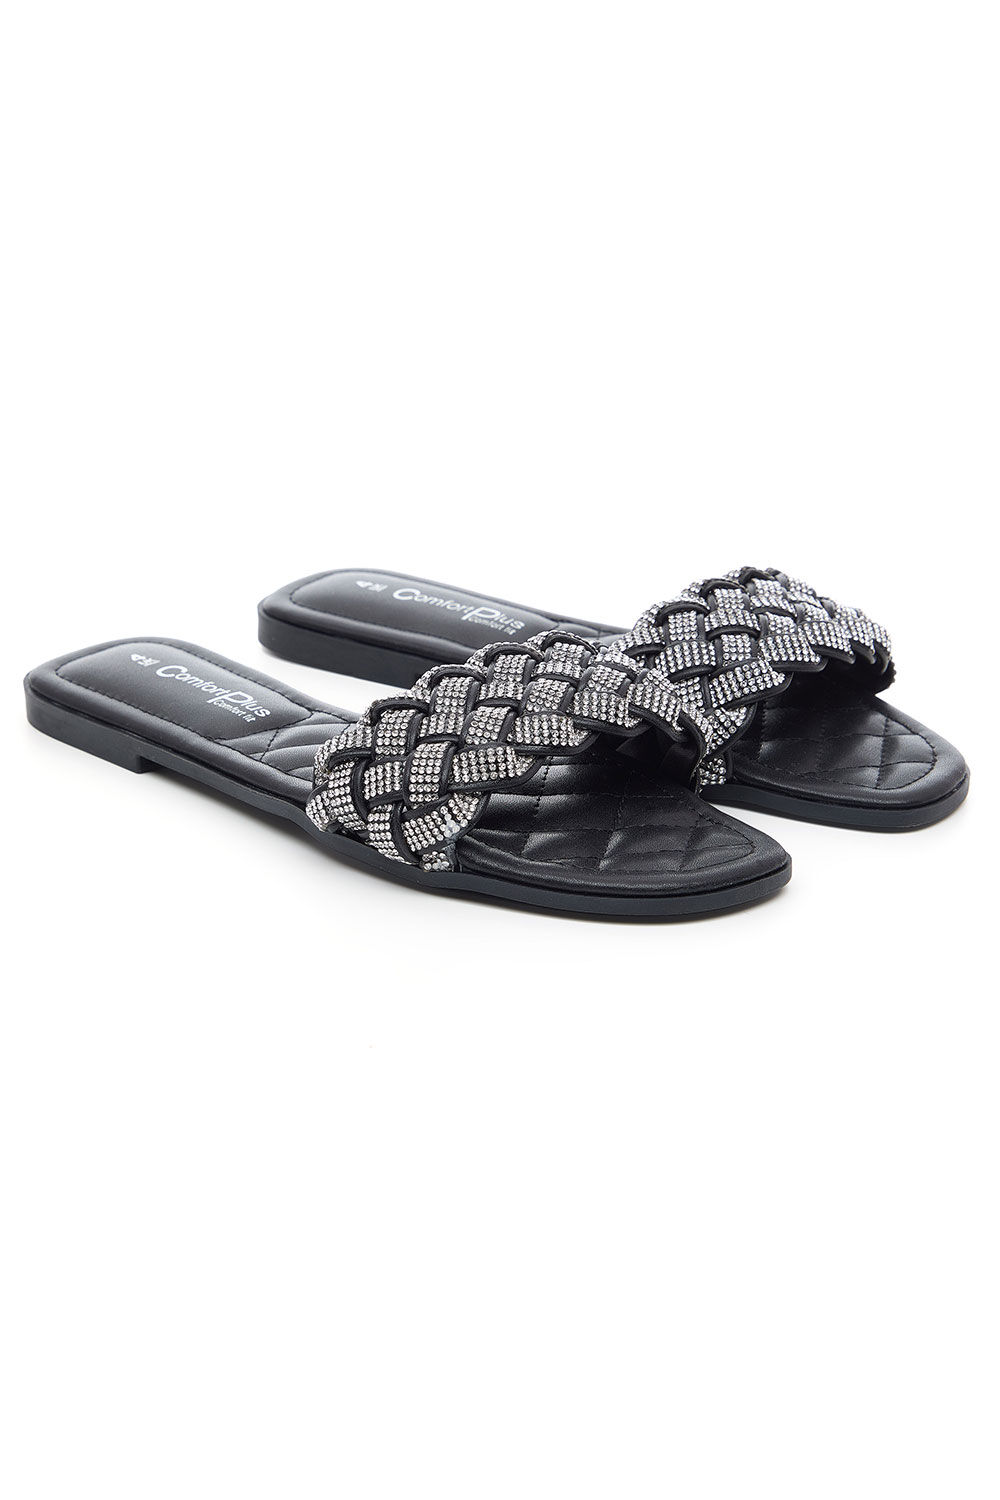 Comfort Plus Black - Diamante Weave Front Band Flat Sandals, Size: 4